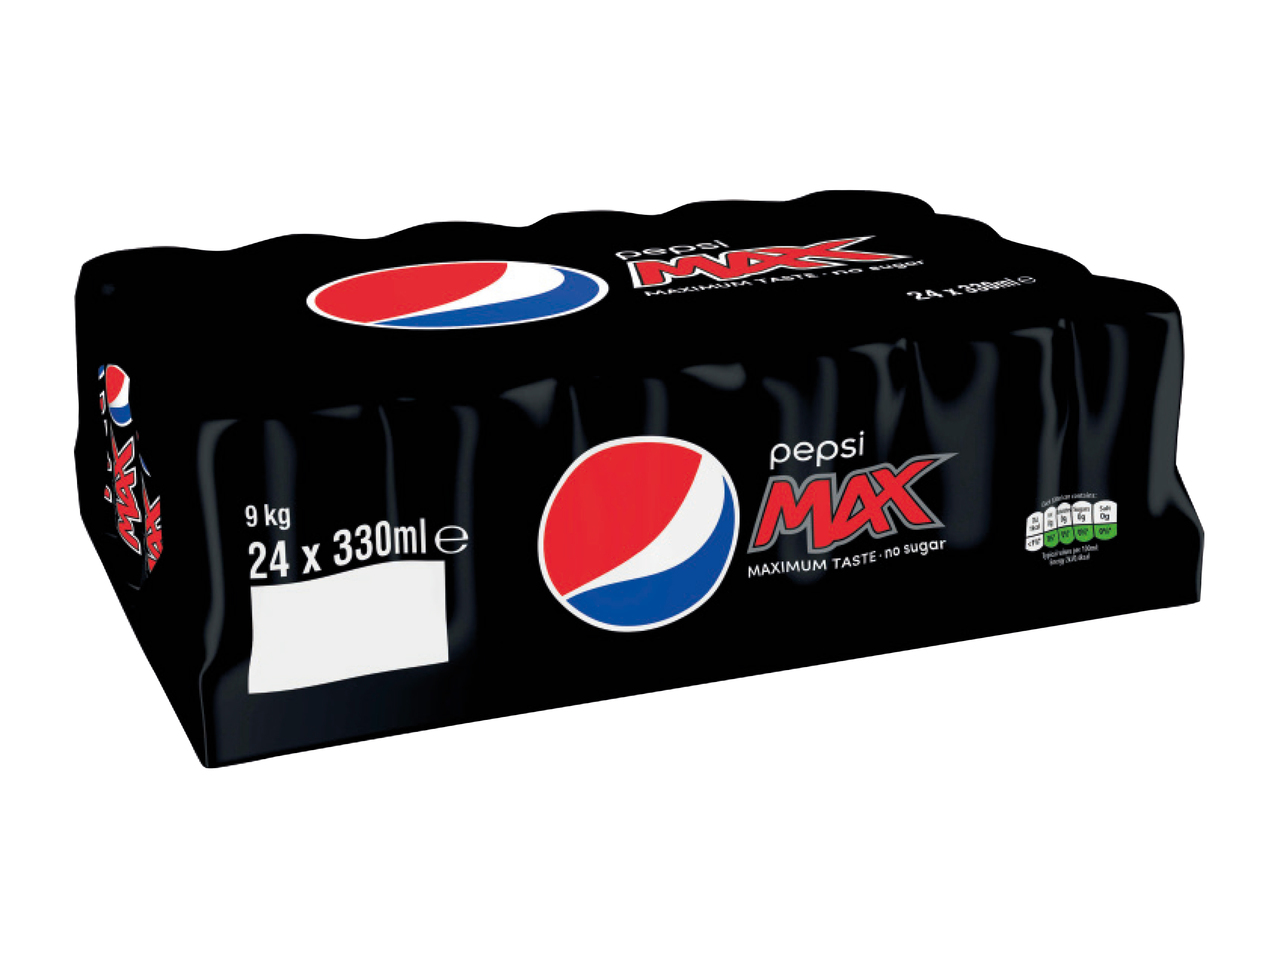 Pepsi Max or Diet1